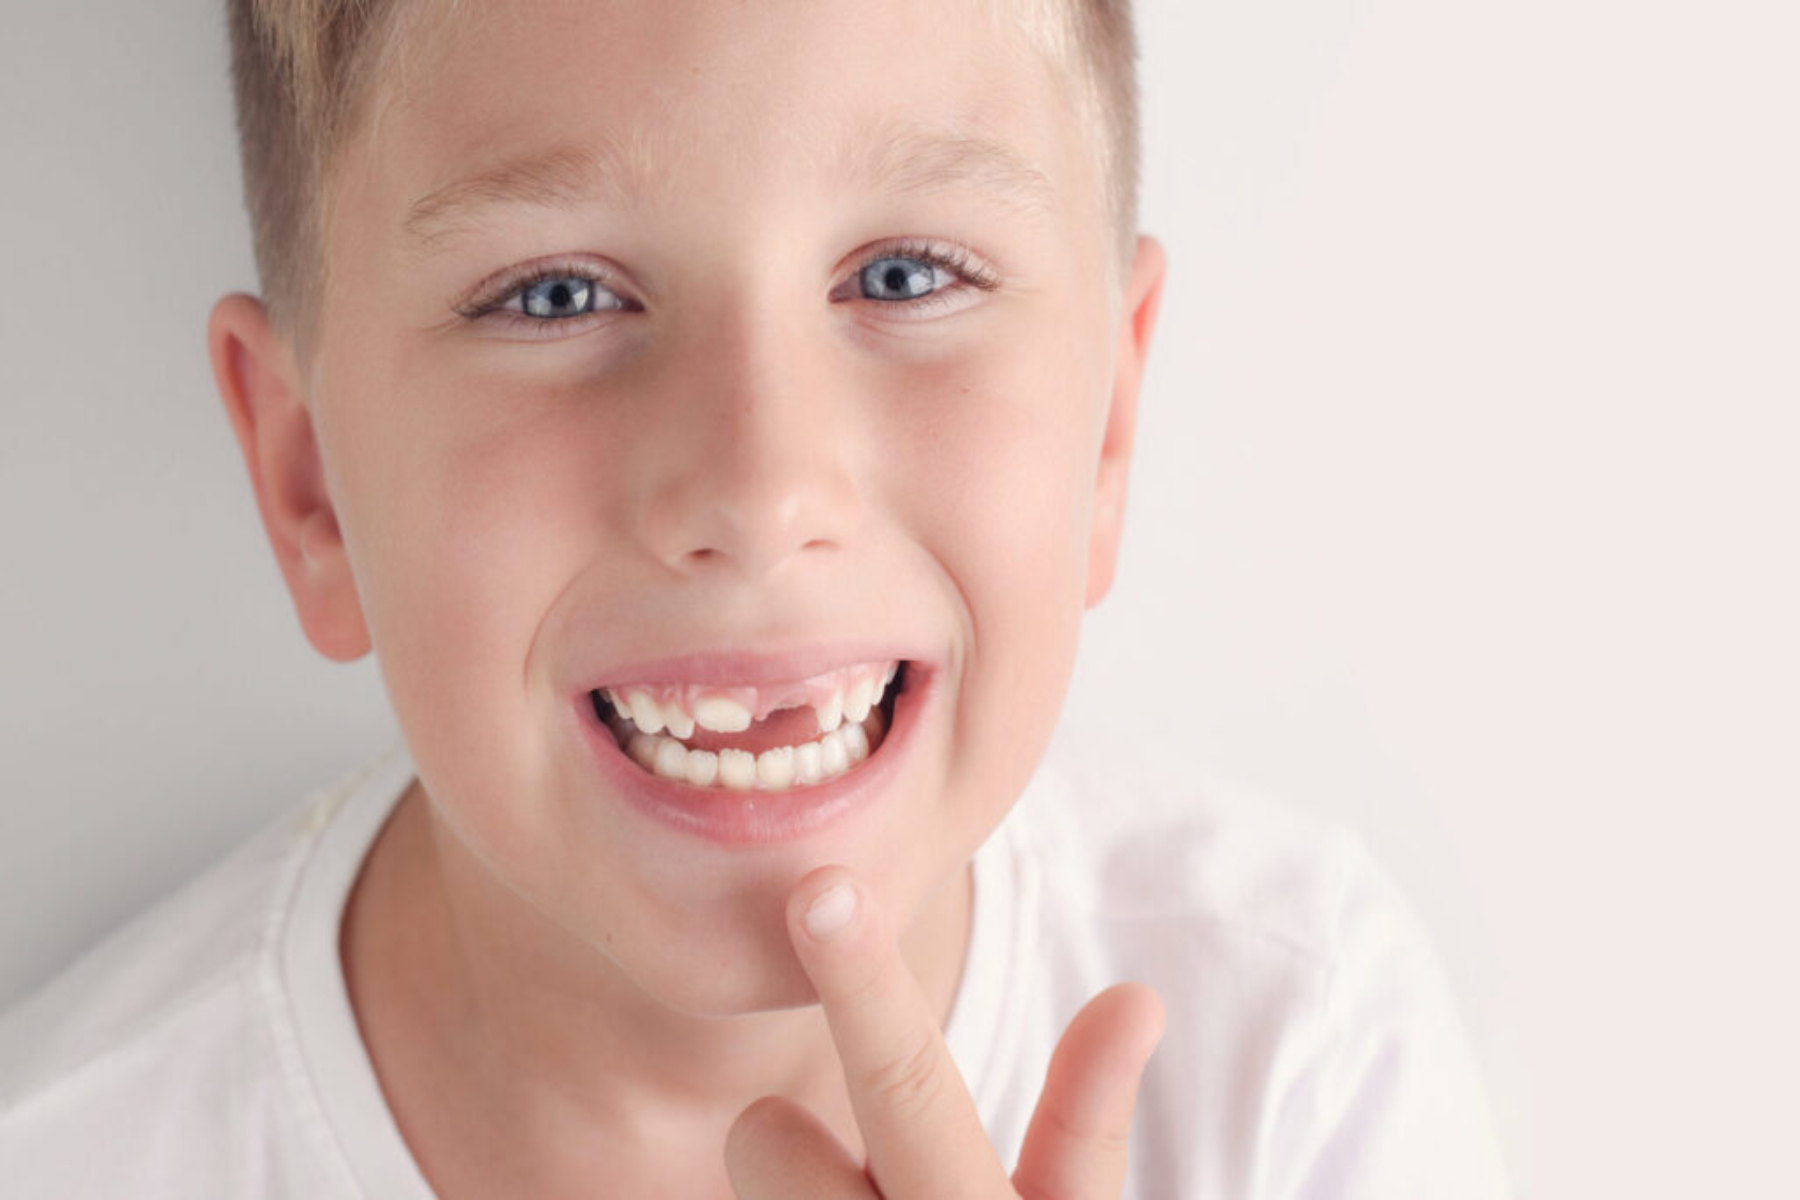 Στοματική Υγεία: Σε ποιες περιπτώσεις αφαιρούνται τα δόντια σε μικρή ηλικία;